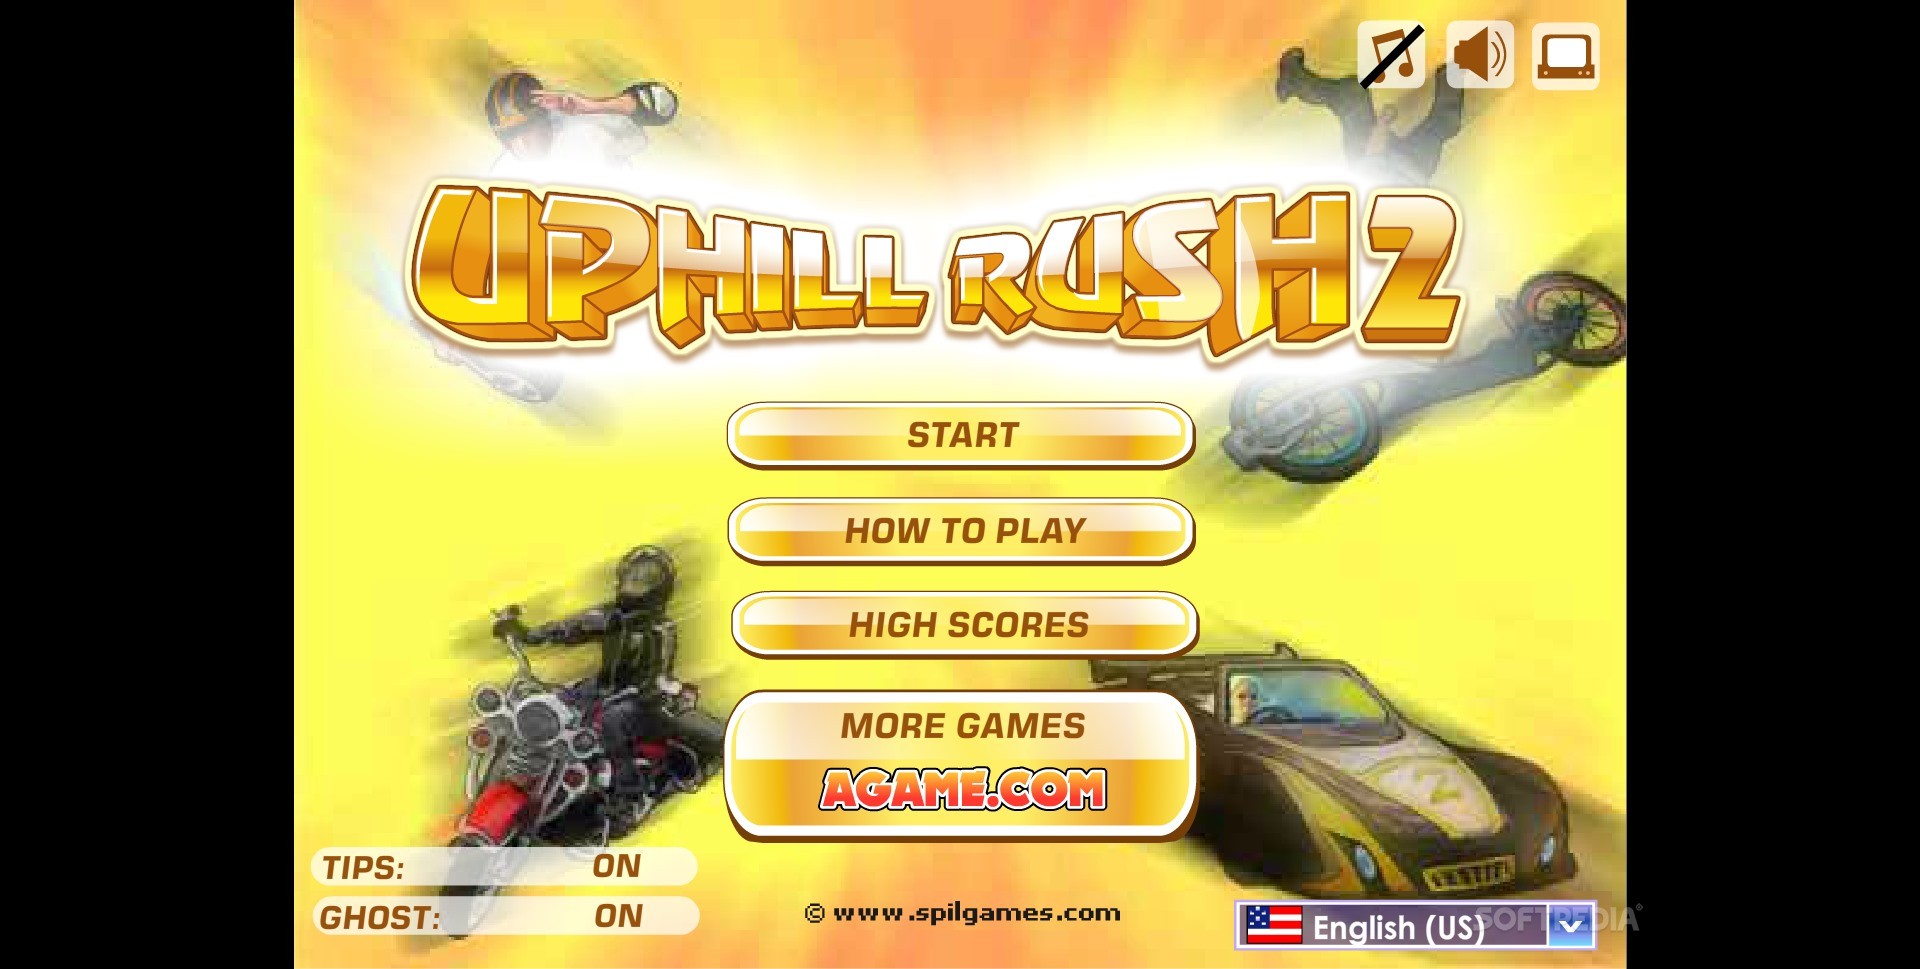 Uphill Rush 2